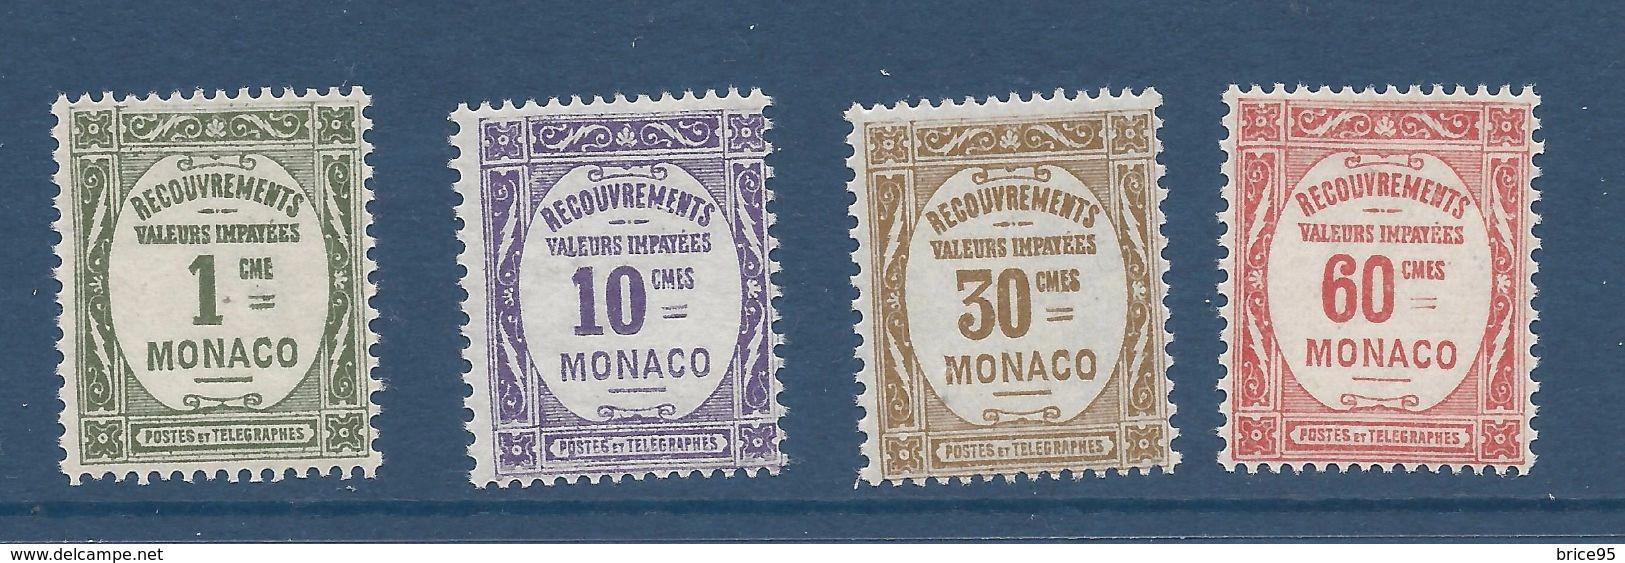 Monaco Taxe - YT N° 13 à 16 * - Neuf Avec Charnière - 1924 à 1932 - Unused Stamps